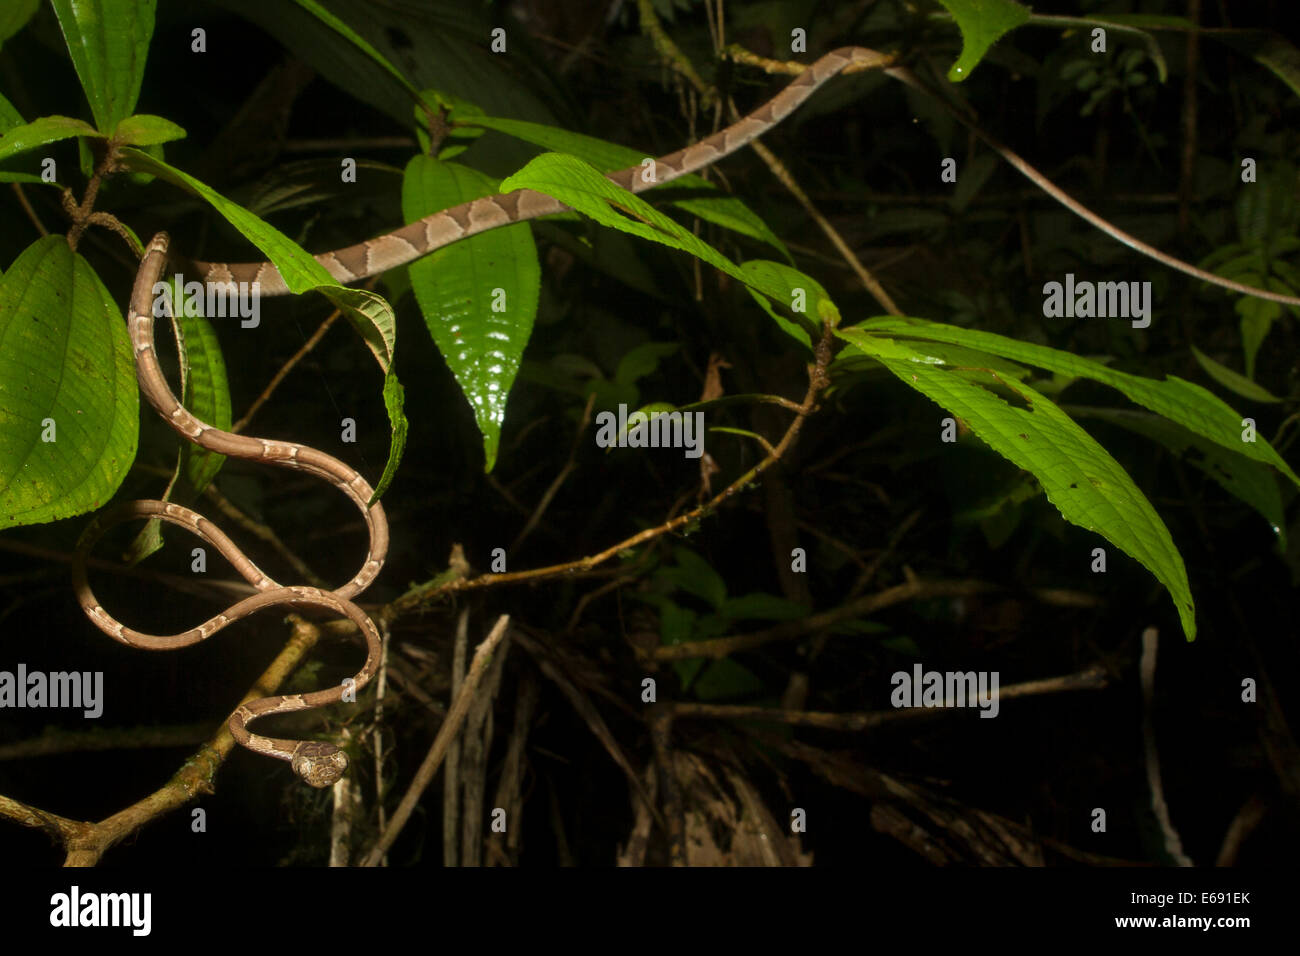 Un blunt extrêmement mince serpent à tête (Imantodes cenchoa). Photographié au Costa Rica. Banque D'Images